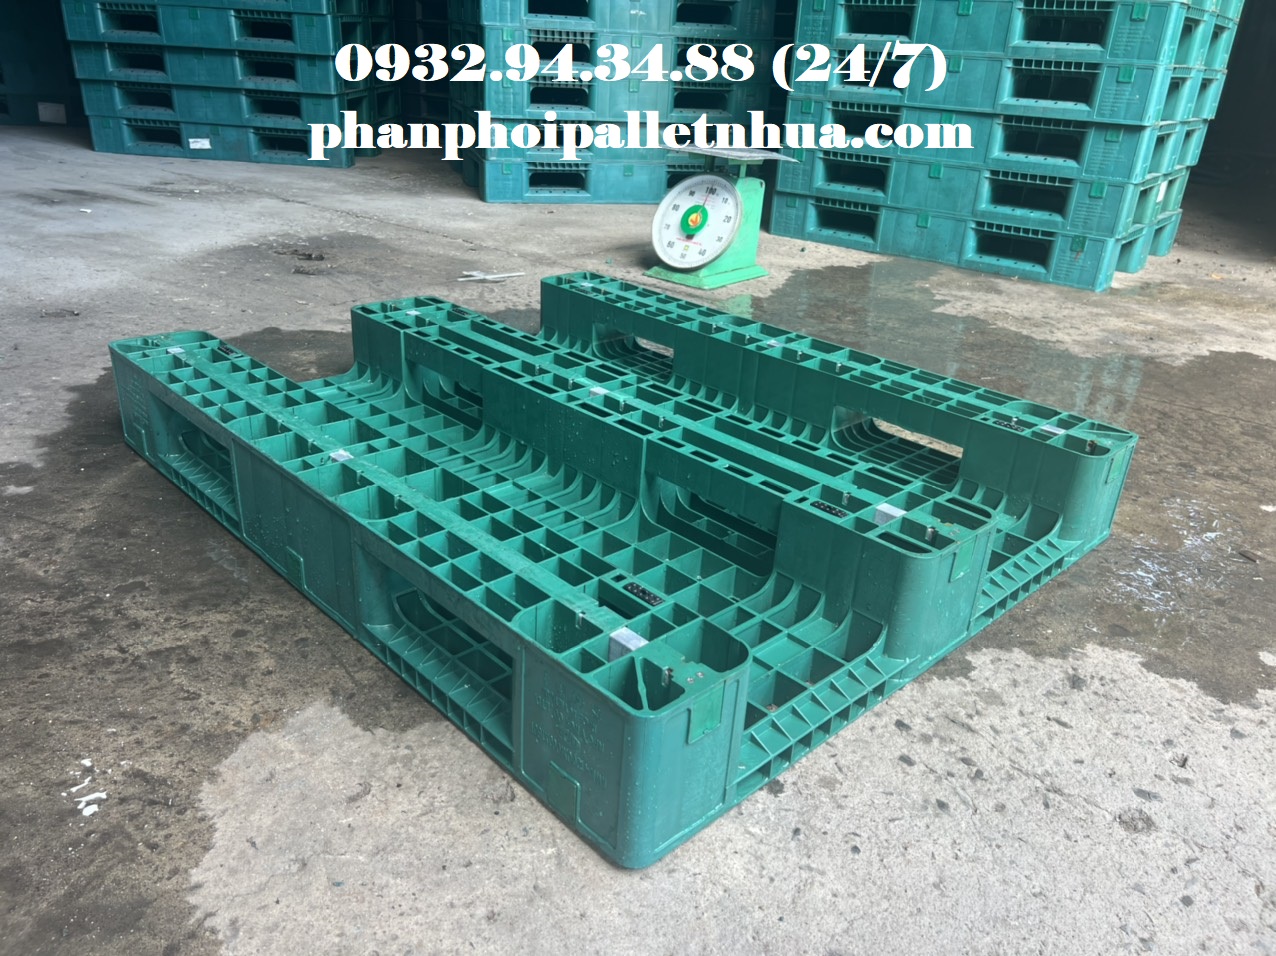 Phân phối pallet nhựa giá rẻ tại Trà Vinh,  liên hệ 0932943488 (24/7)